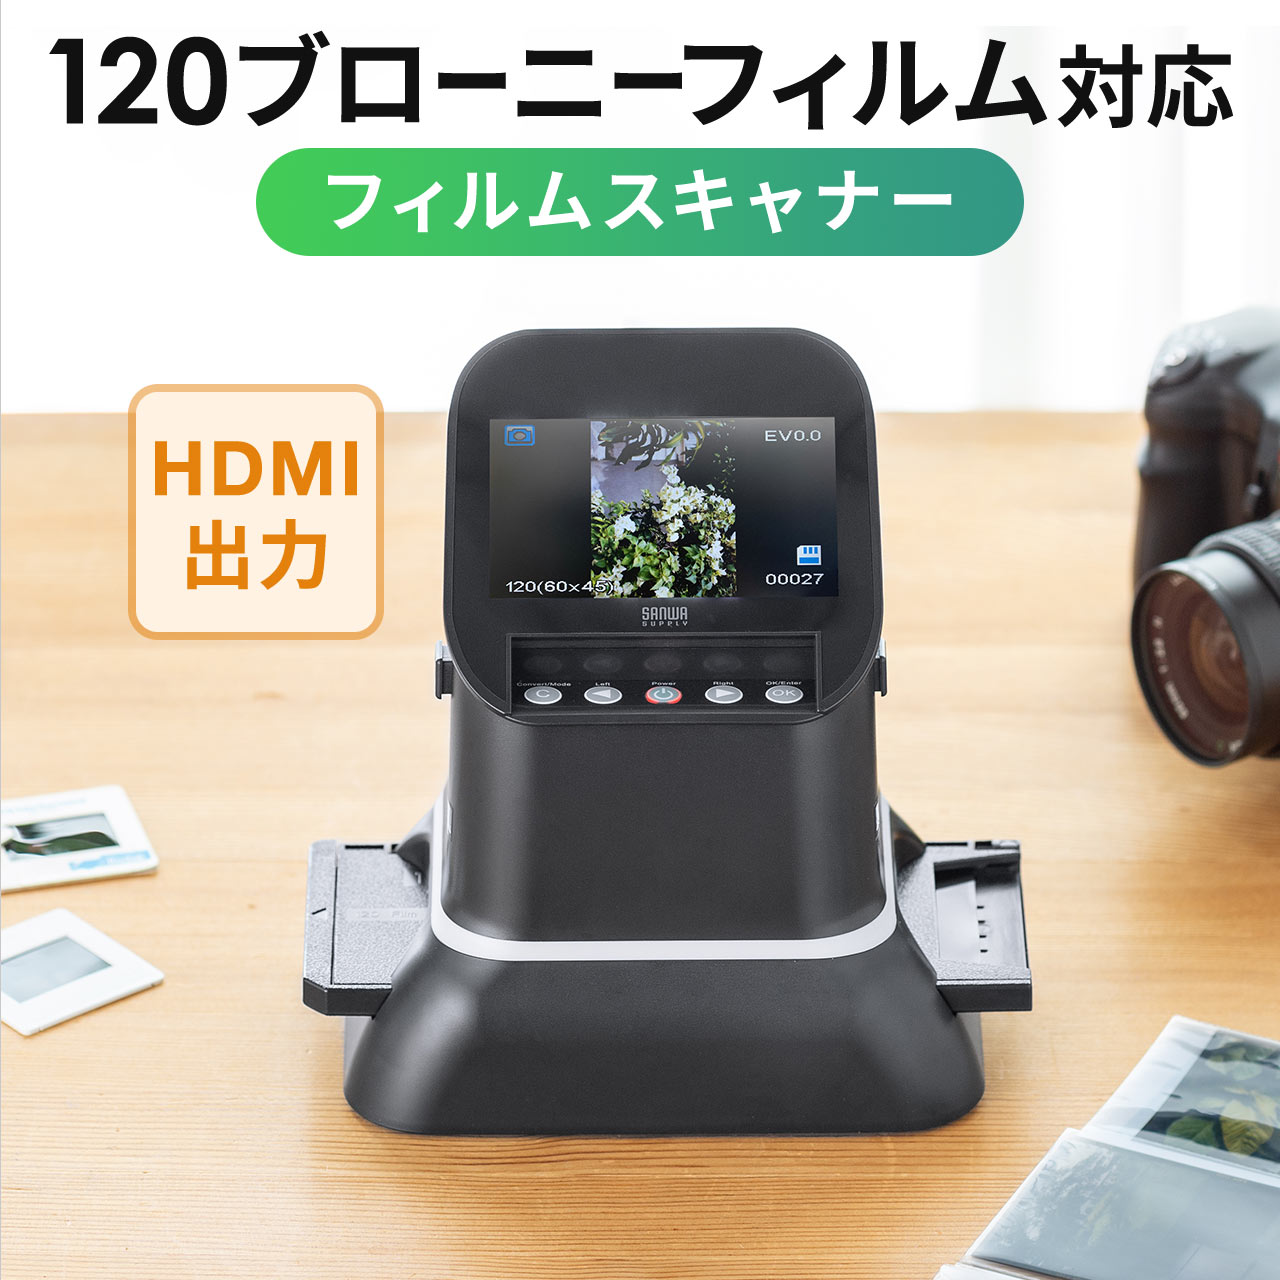 フィルムスキャナー 写真 スキャナー スキャン 120ブローニーフィルム 高画質 高解像度 ネガ ポジ フィルム デジタル化 HDMI出力 テレビ出力 対応 400-SCN065